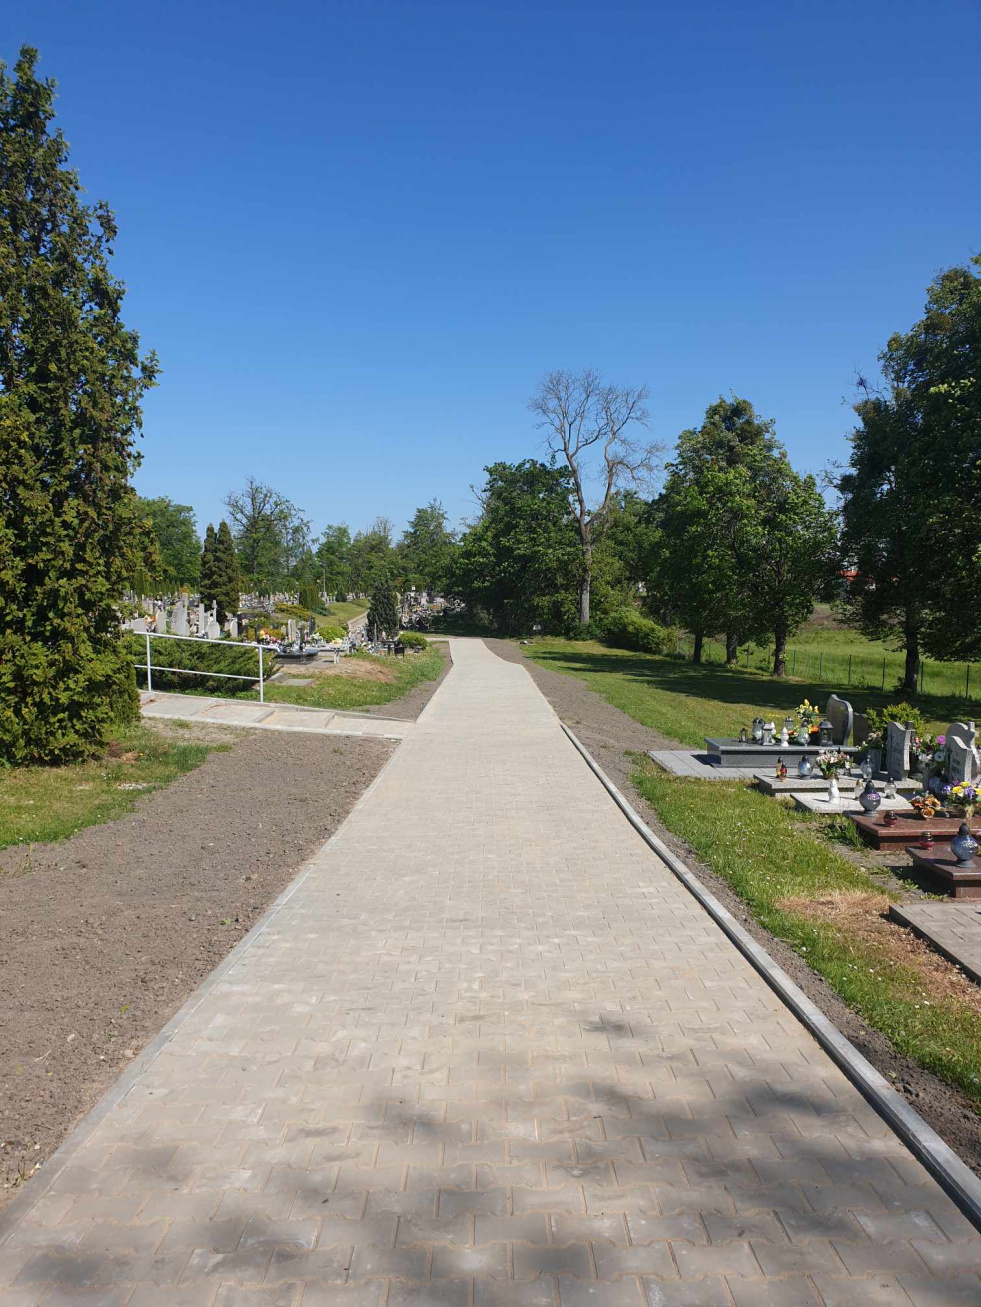 Modernizacja cmentarza komunalnego w Młynarach - III etap zakończony